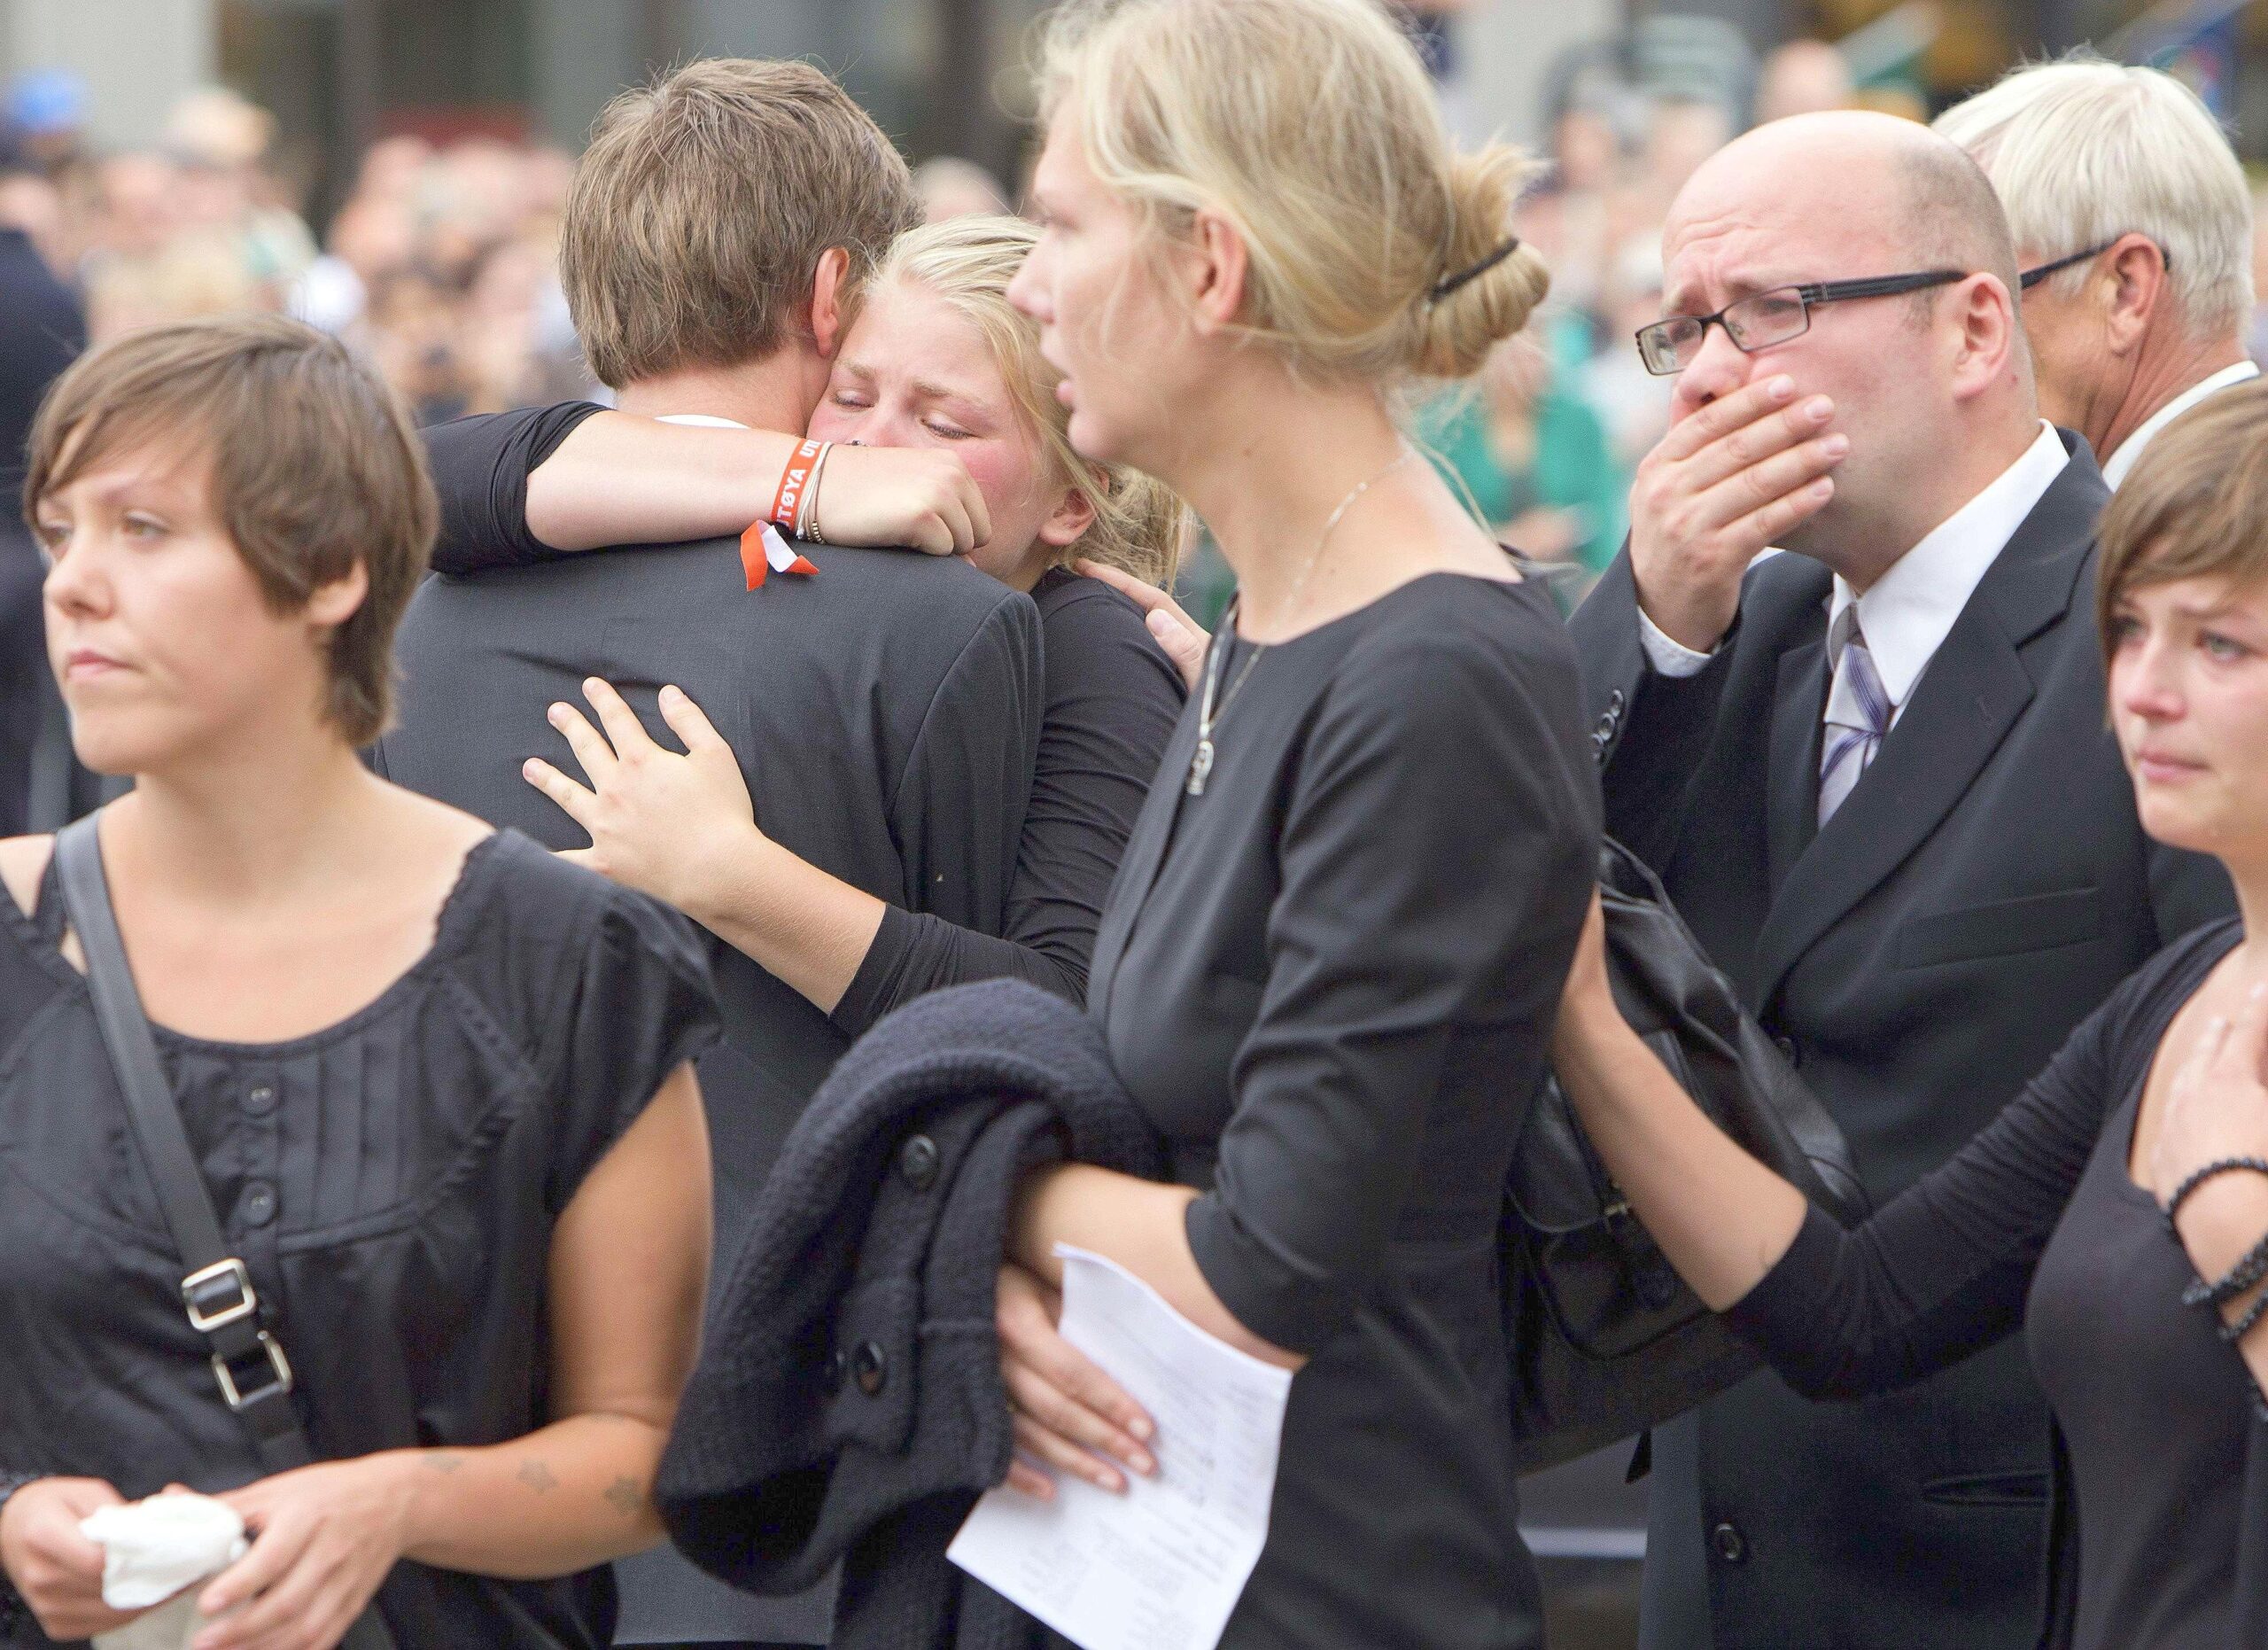 Fassungslos und geschockt sind die Menschen beim Trauergottesdienst in der Kathedrale in Oslo zwei Tage nach dem Massaker.